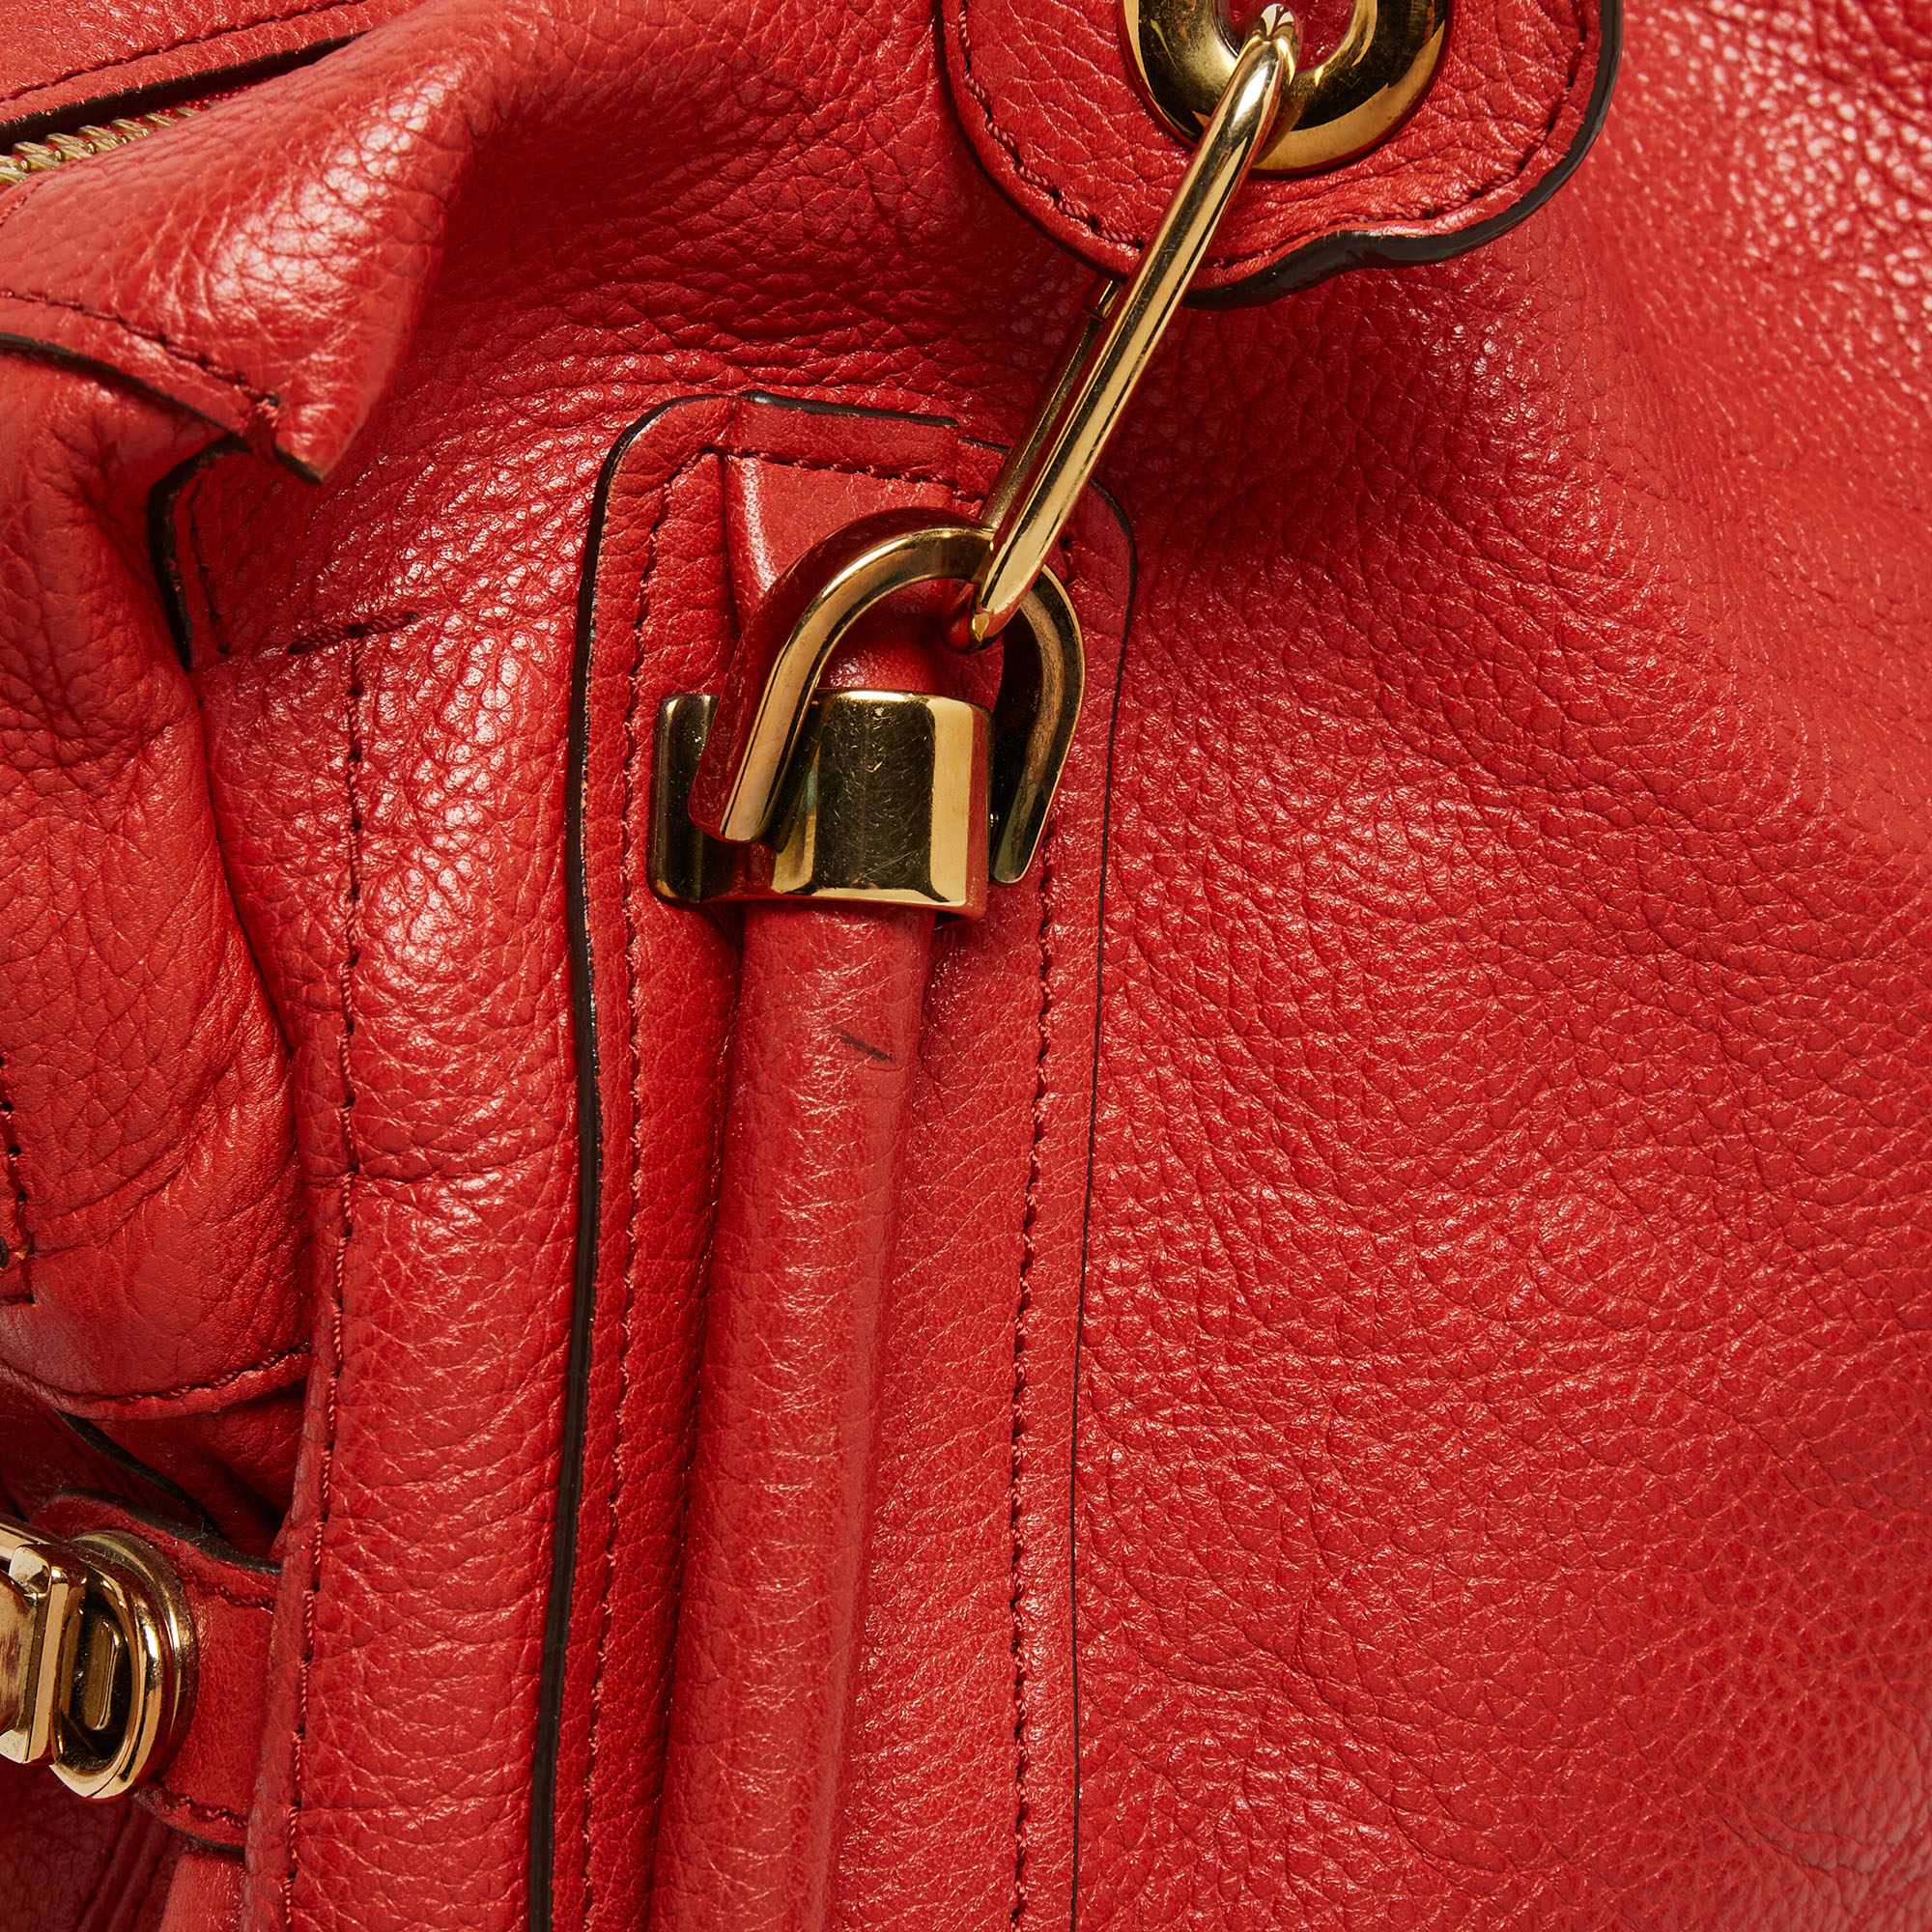 Chloe Brick Red Leather Large Paraty Shoulder Bag